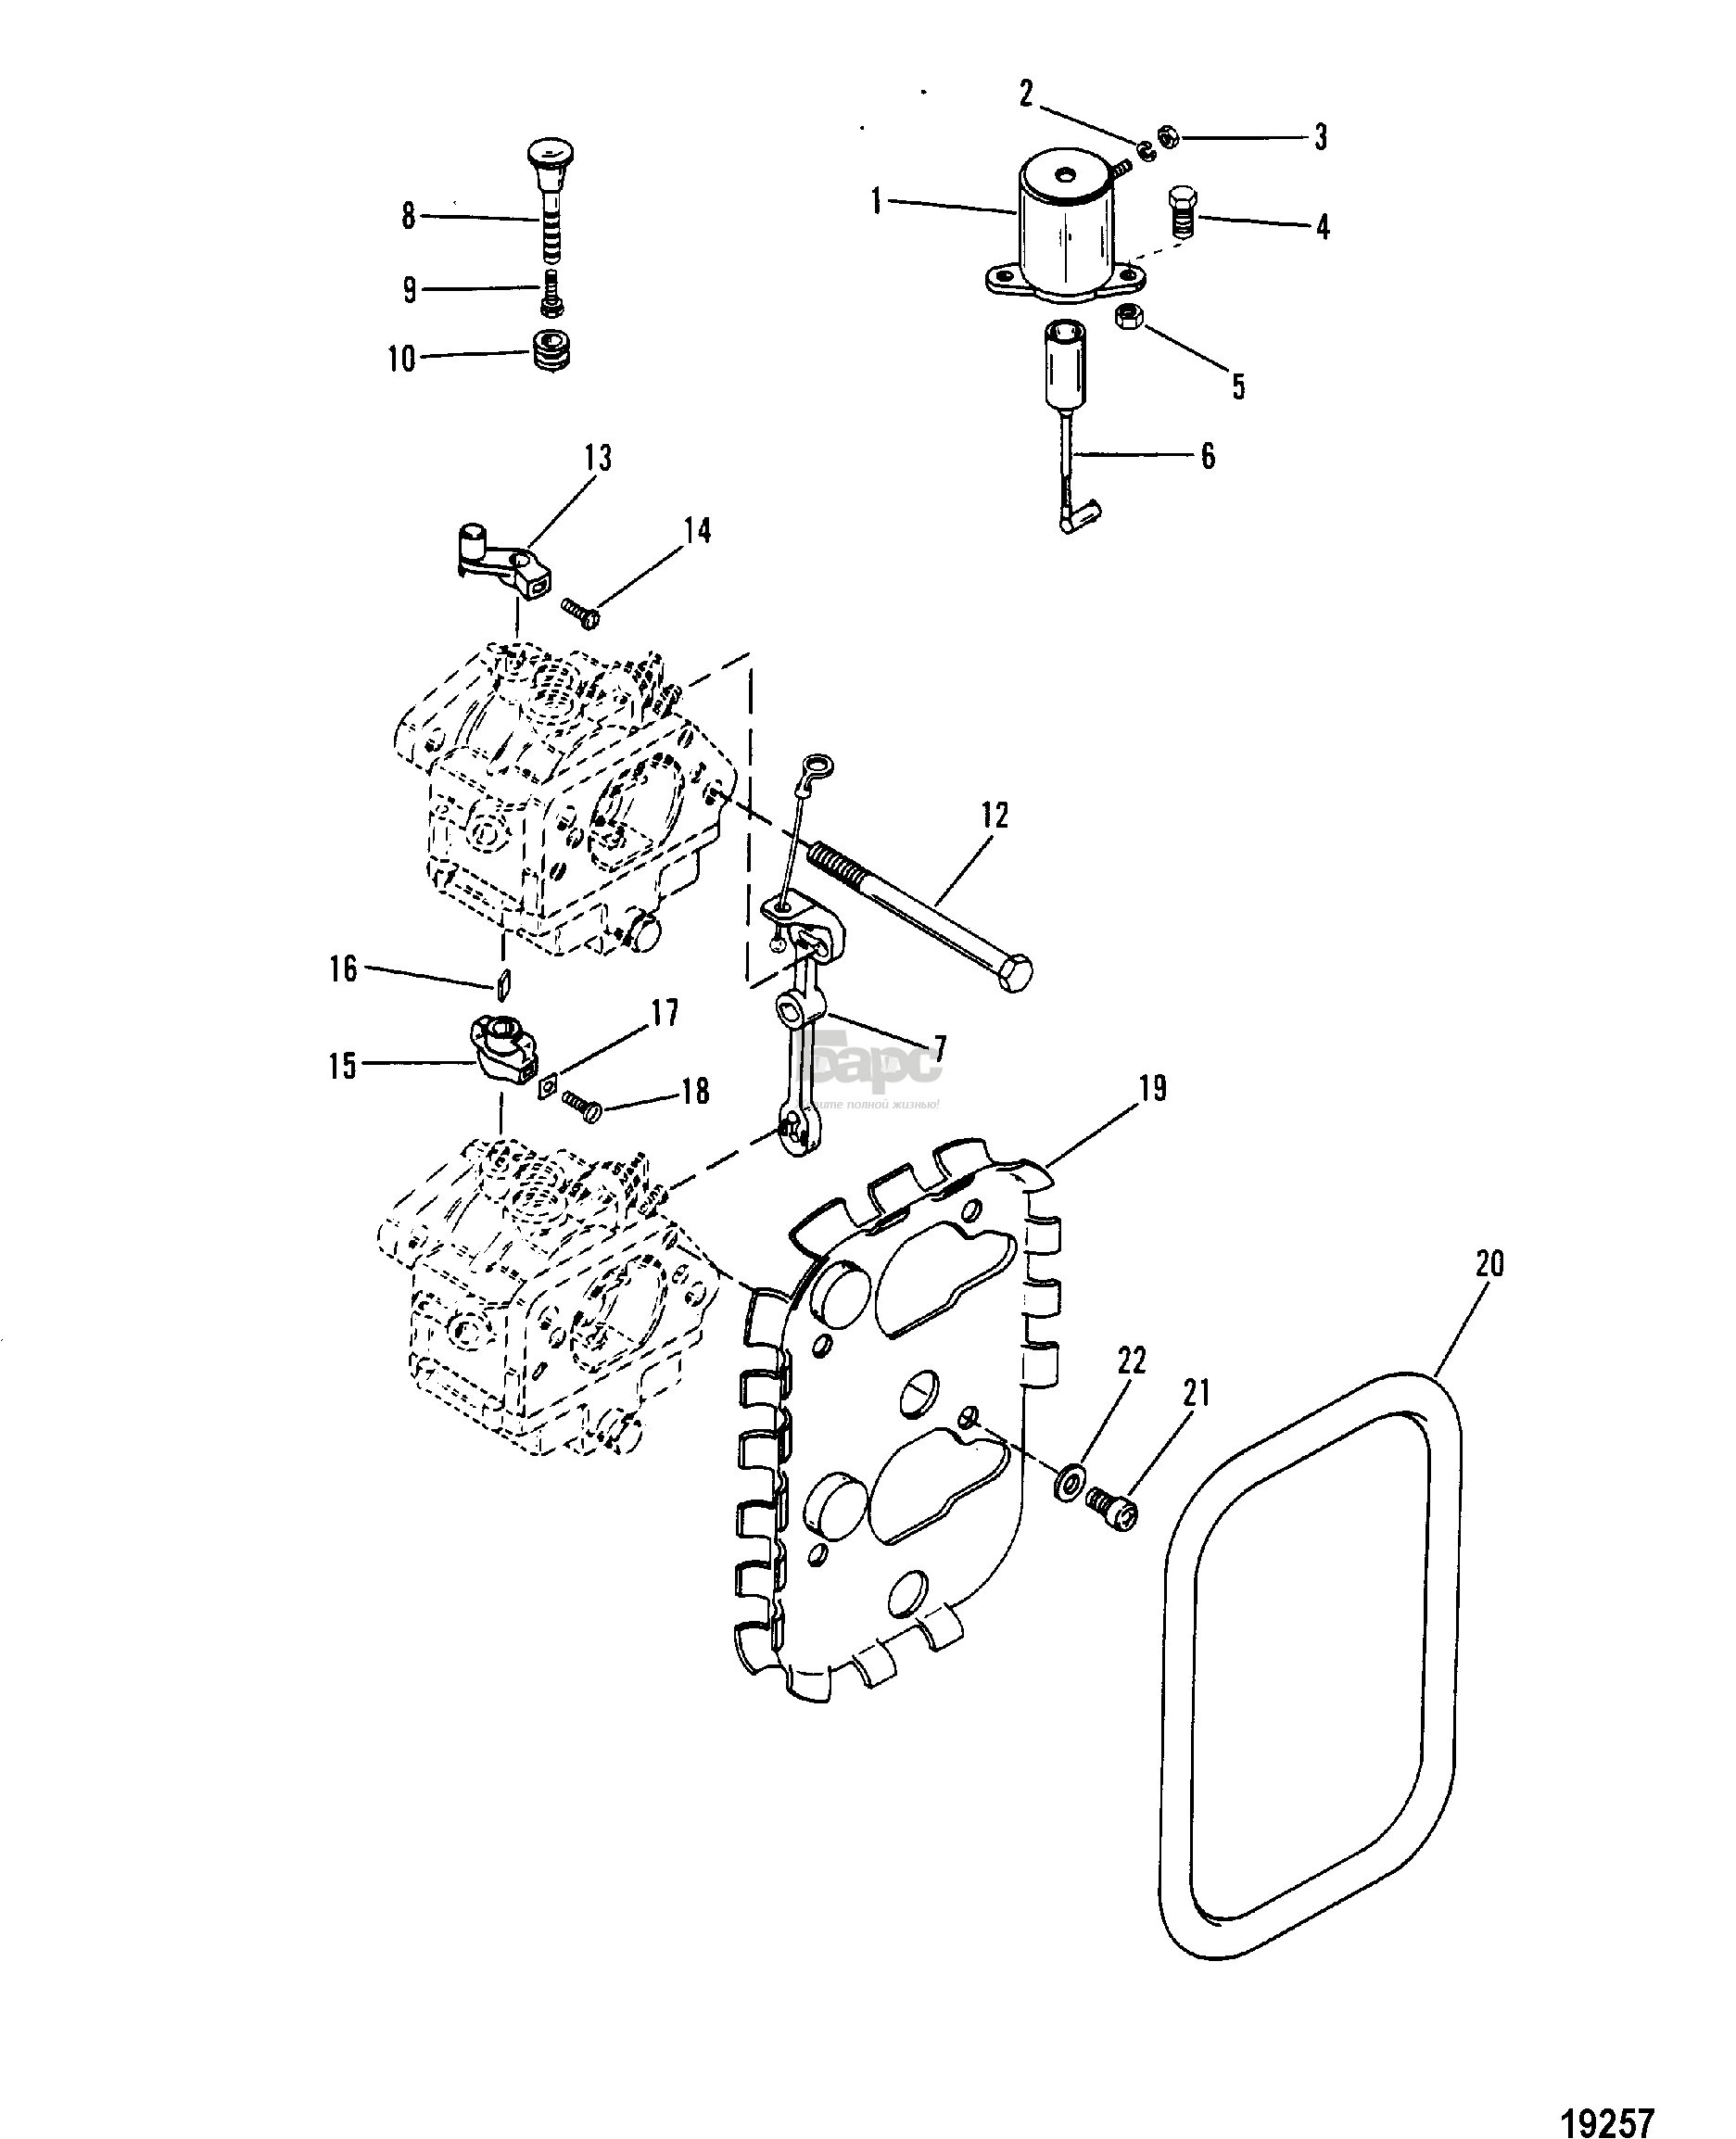 Carburetor Linkage and Choke Solenoid